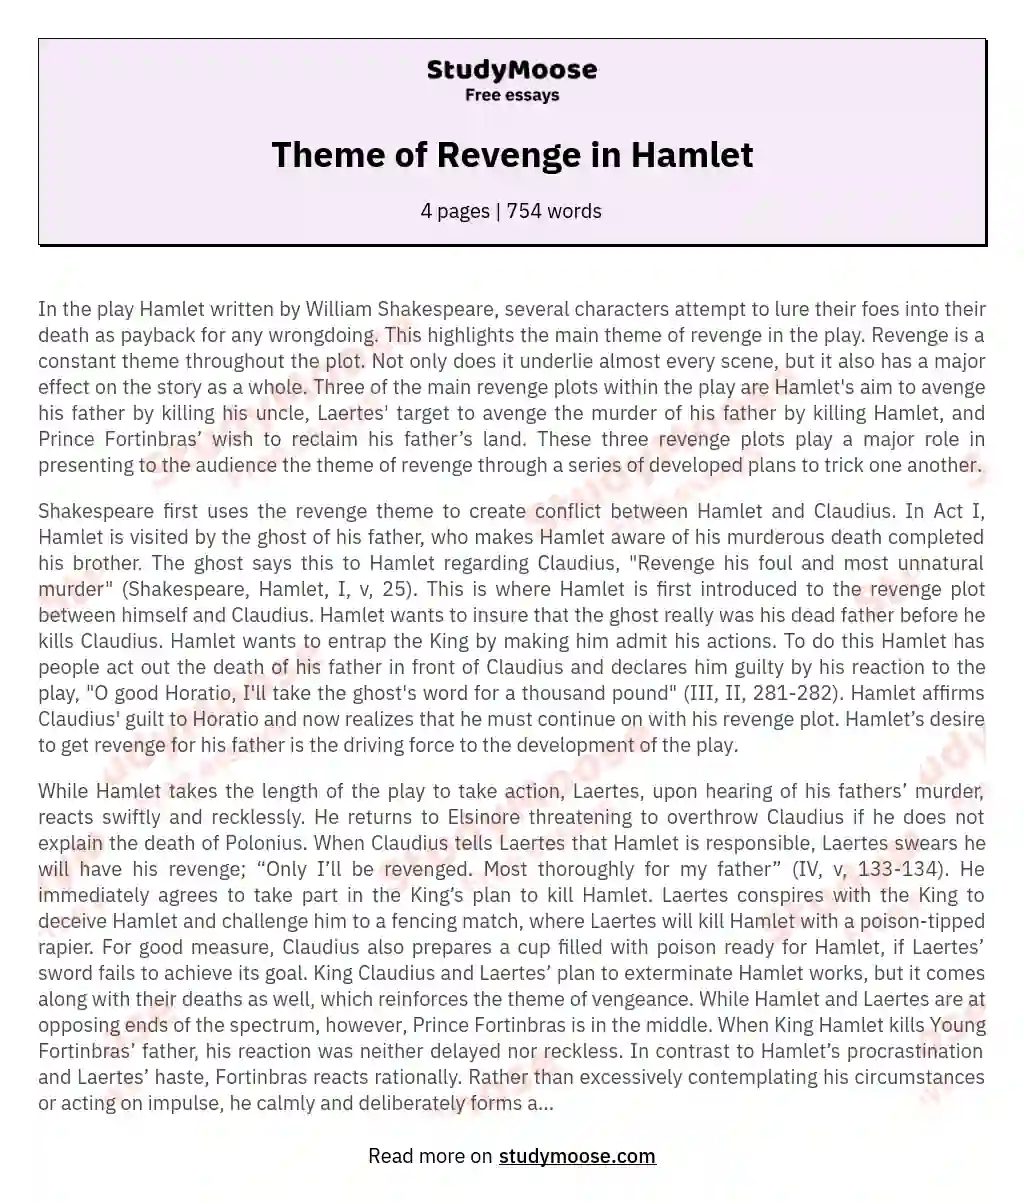 Theme of Revenge in Hamlet essay